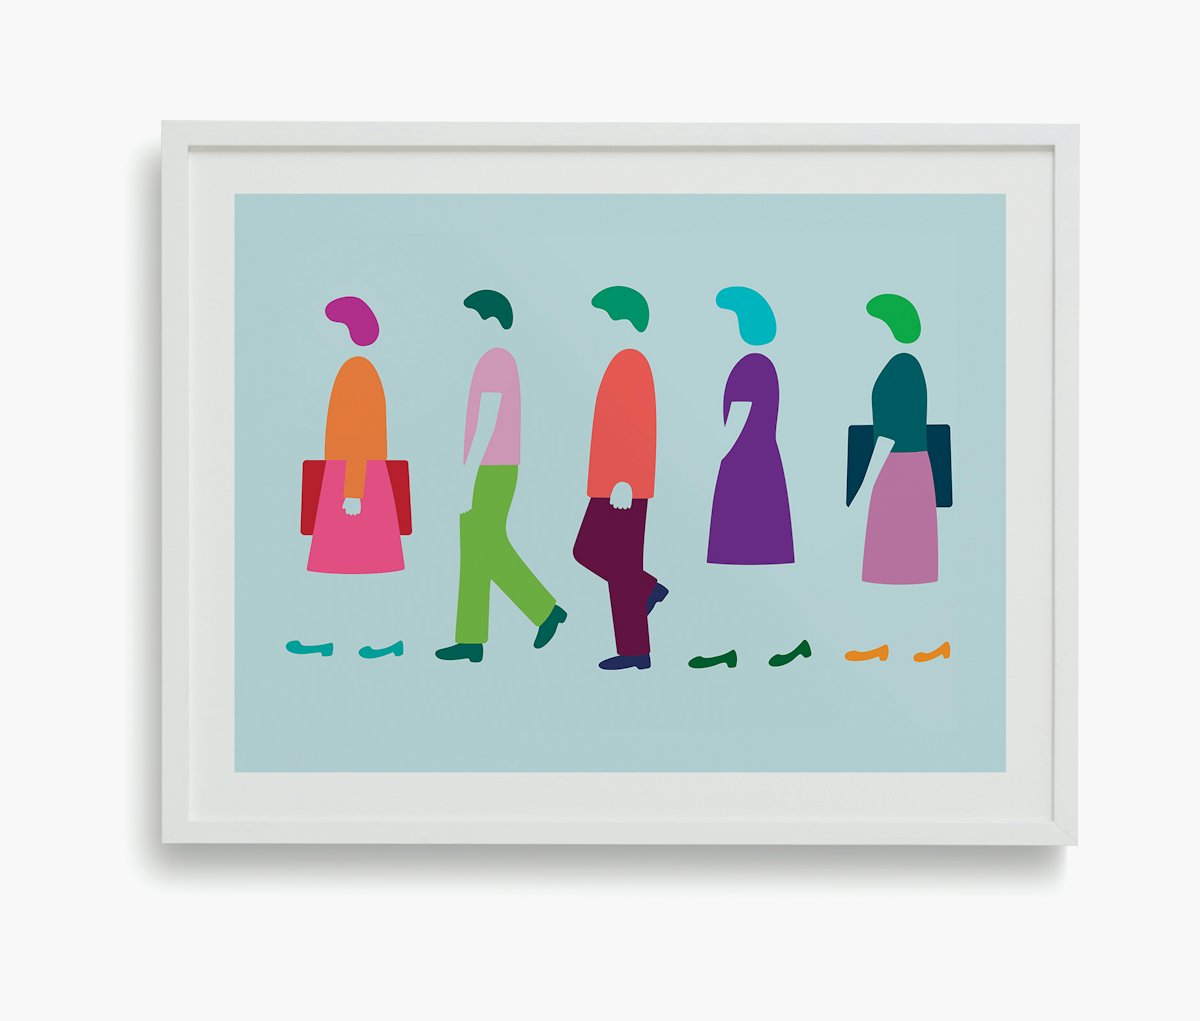 "Five Women Walking" by Dana Bell